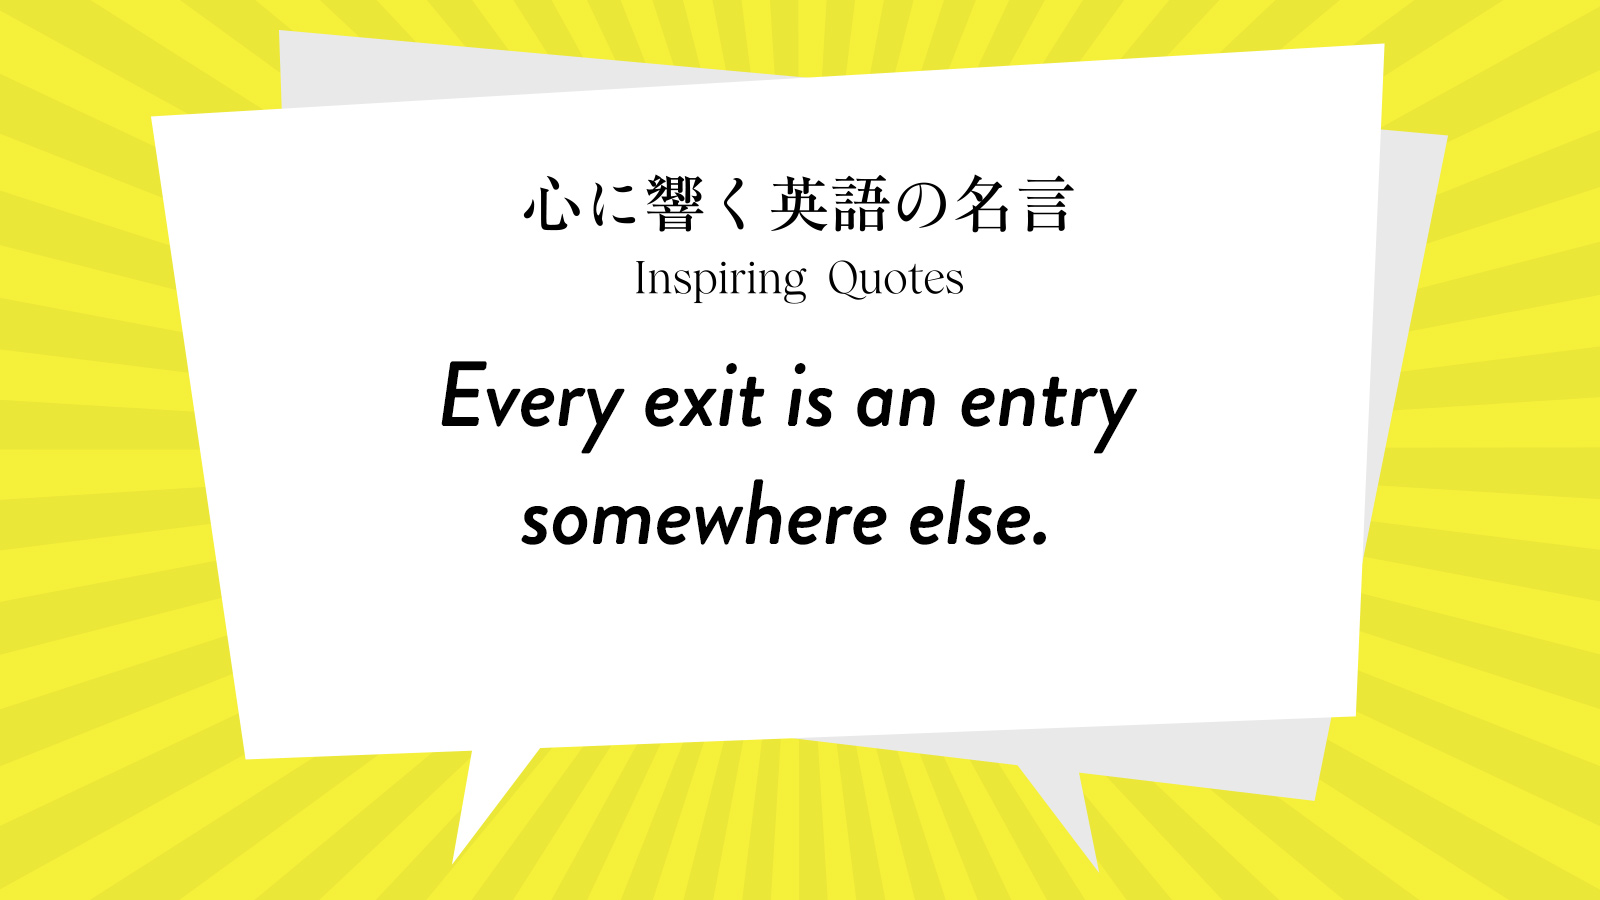 今週の名言 “Every exit is an entry somewhere else.” | Inspiring Quotes: 心に響く英語の名言